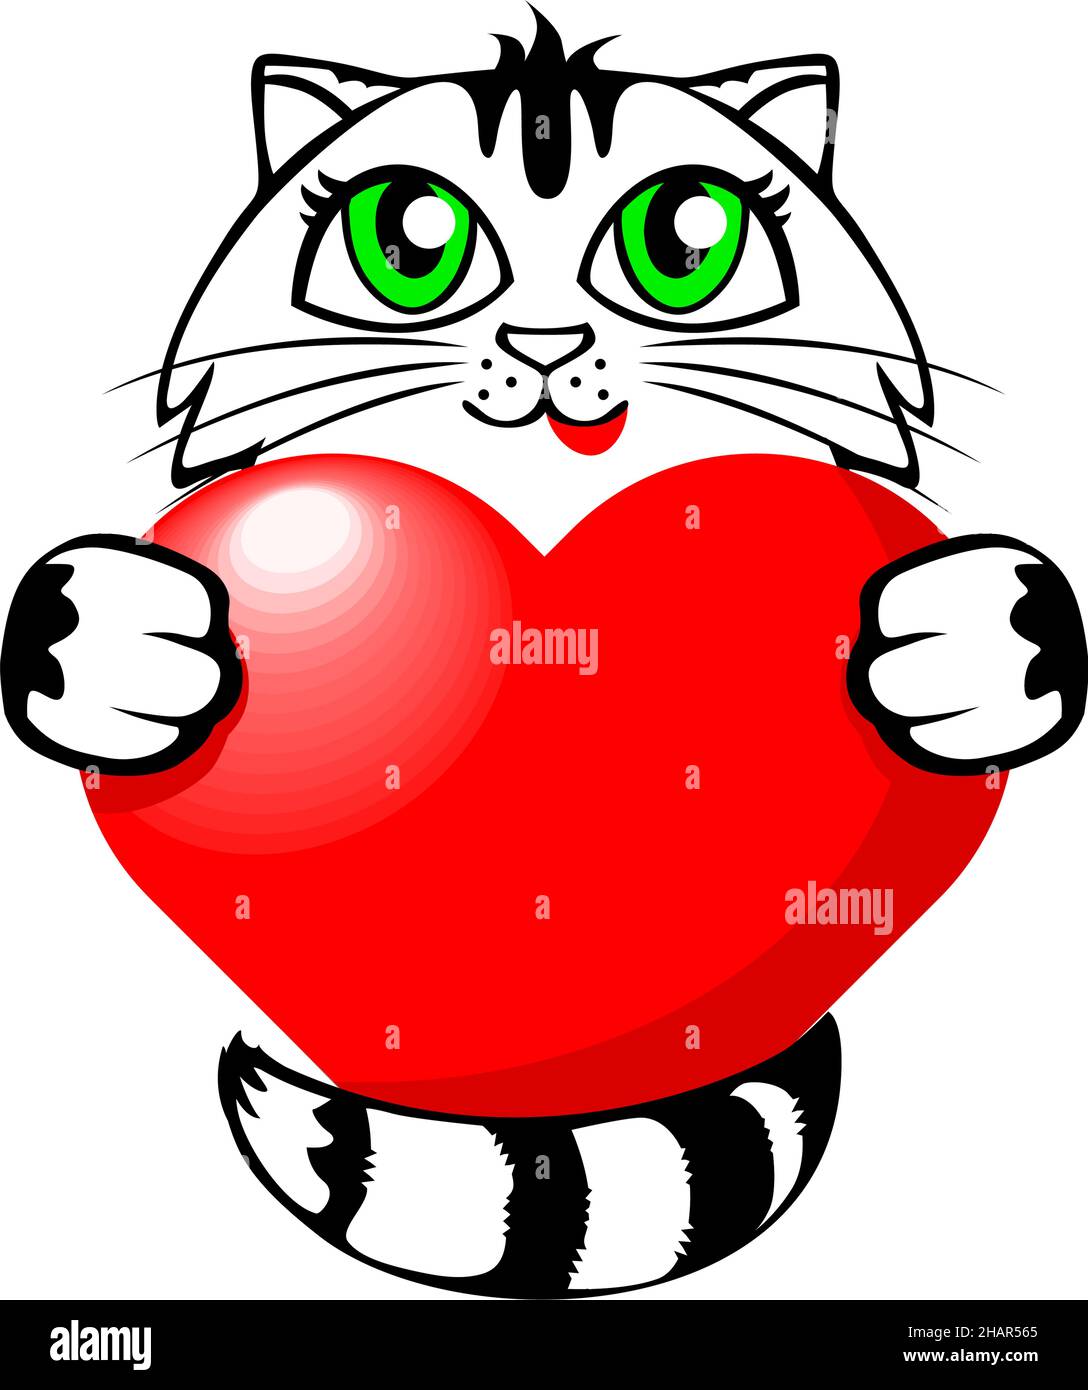 Chatte de tabby drôle avec un coeur rouge.Modèle de carte de vœux pour félicitations pour la Saint-Valentin.Vecteur sur fond transparent Illustration de Vecteur